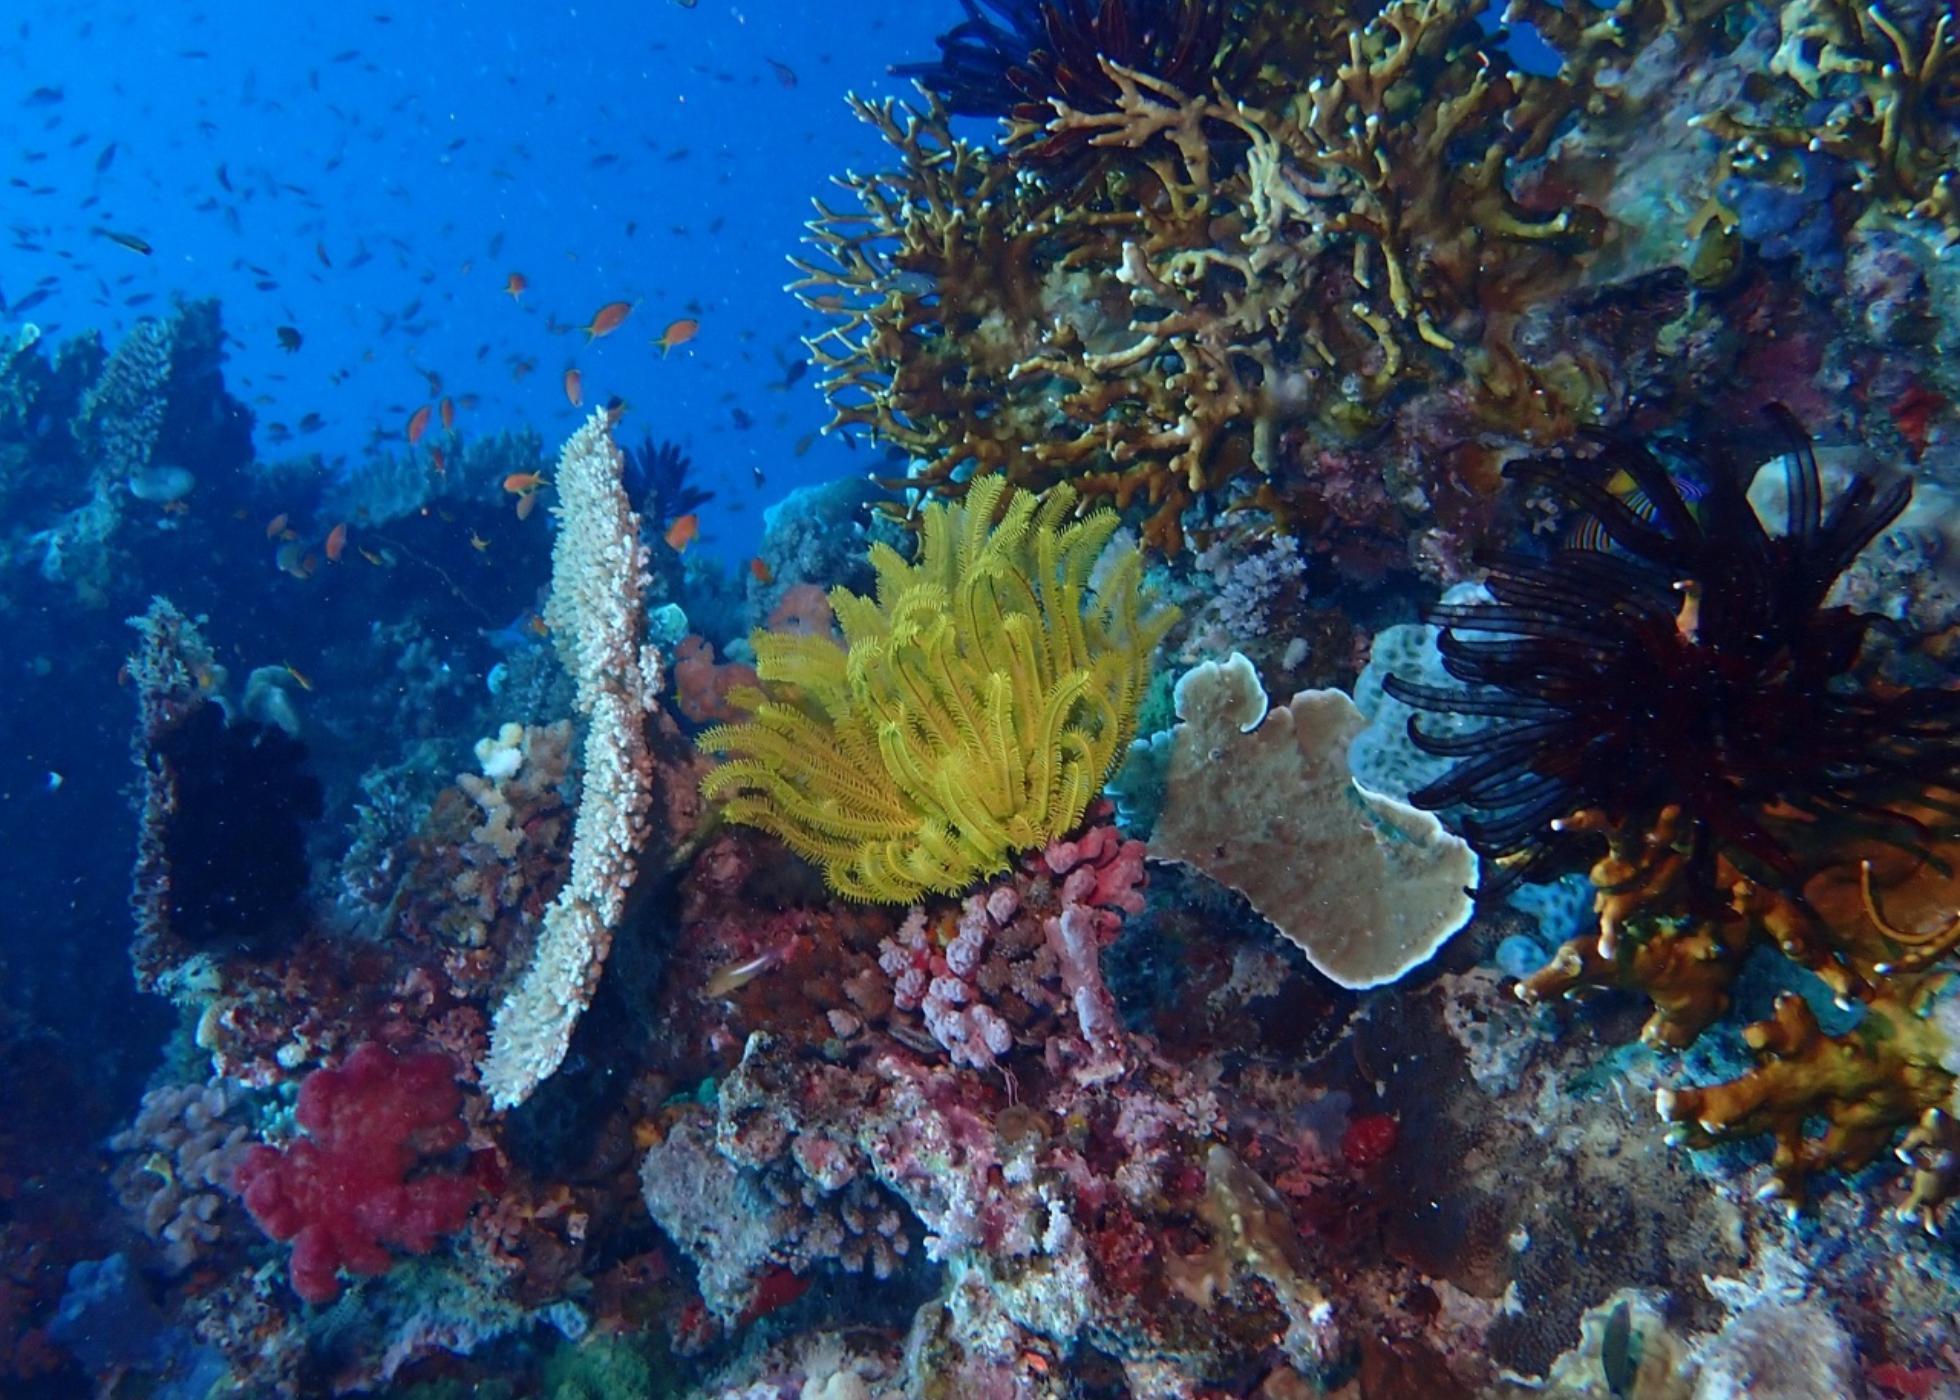 Investigadores preveem quais serão os principais impactos na biodiversidade oceânica, na próxima década